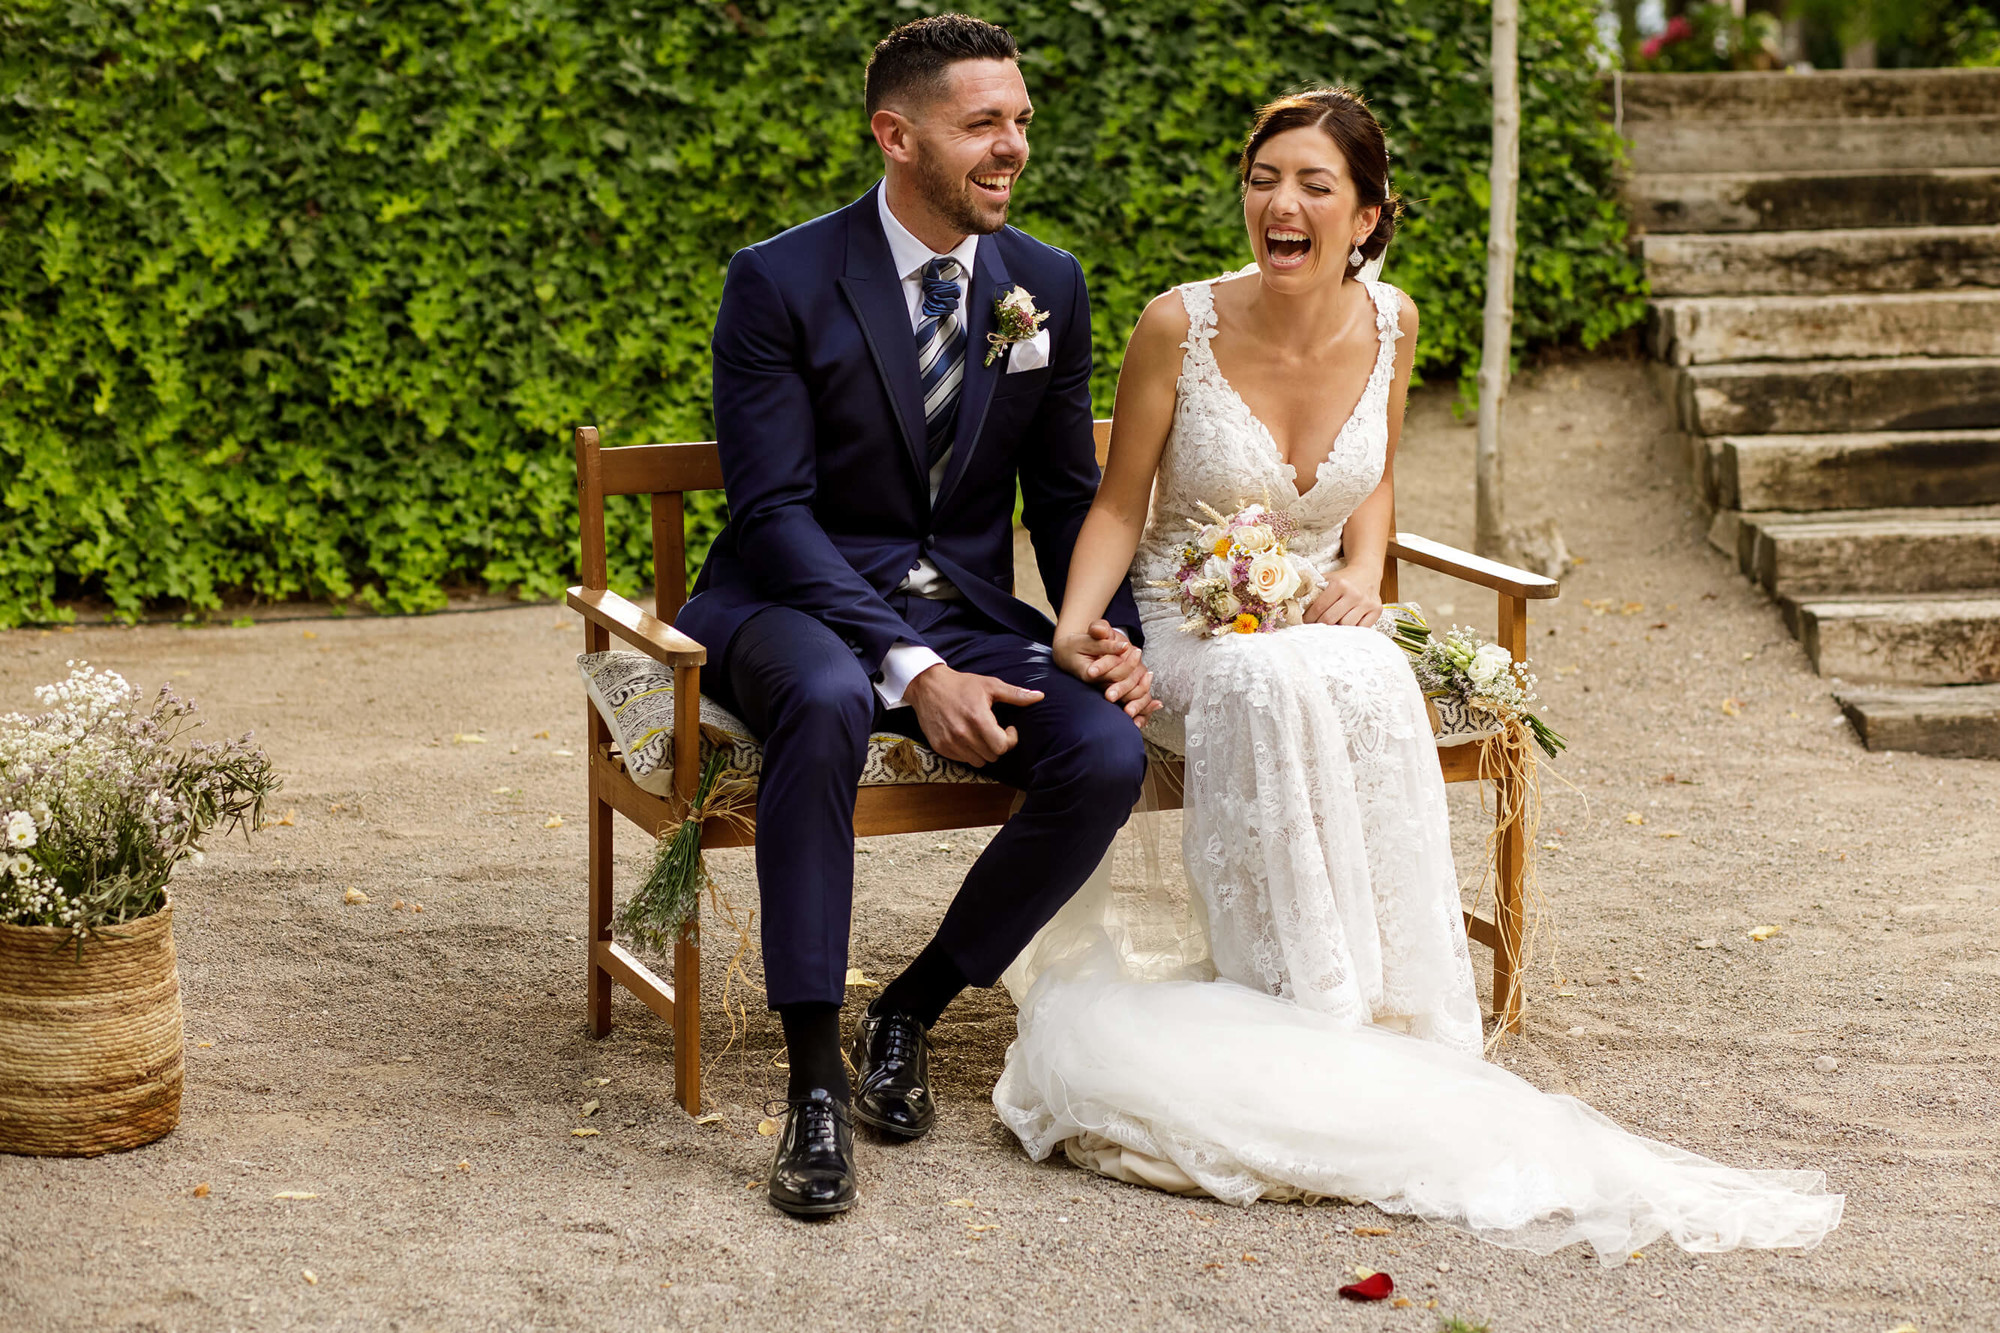 La parella riu durant la cerimònia de boda a Joan Sardà.